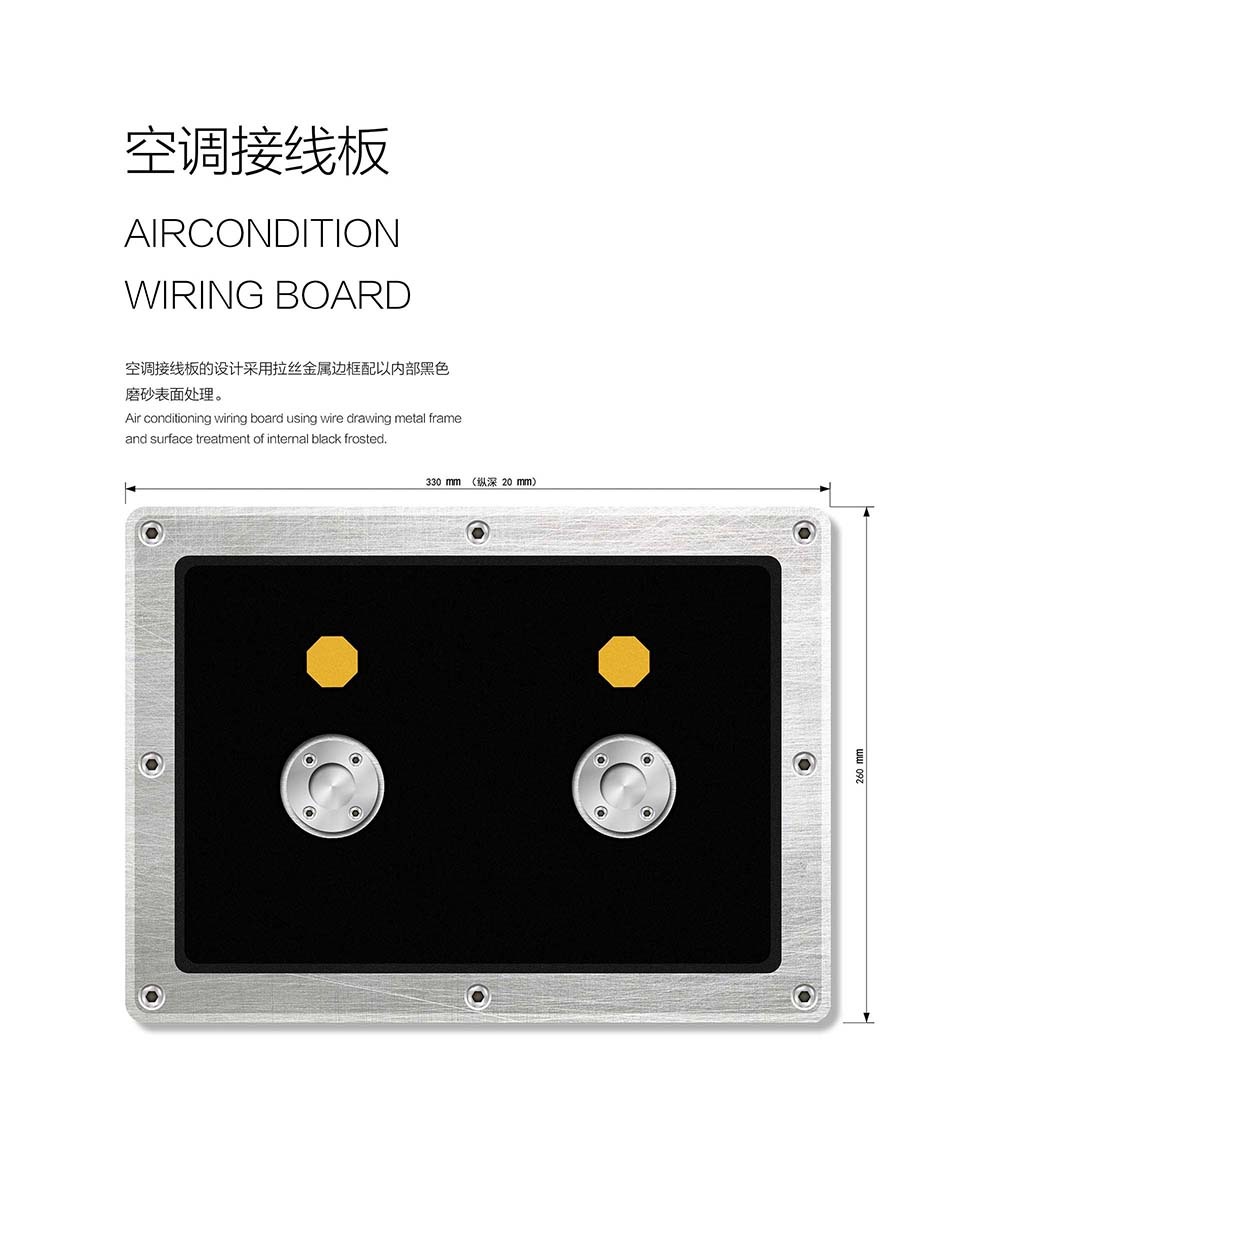 中国航天精密仪器包装箱外观&涂装设计图5